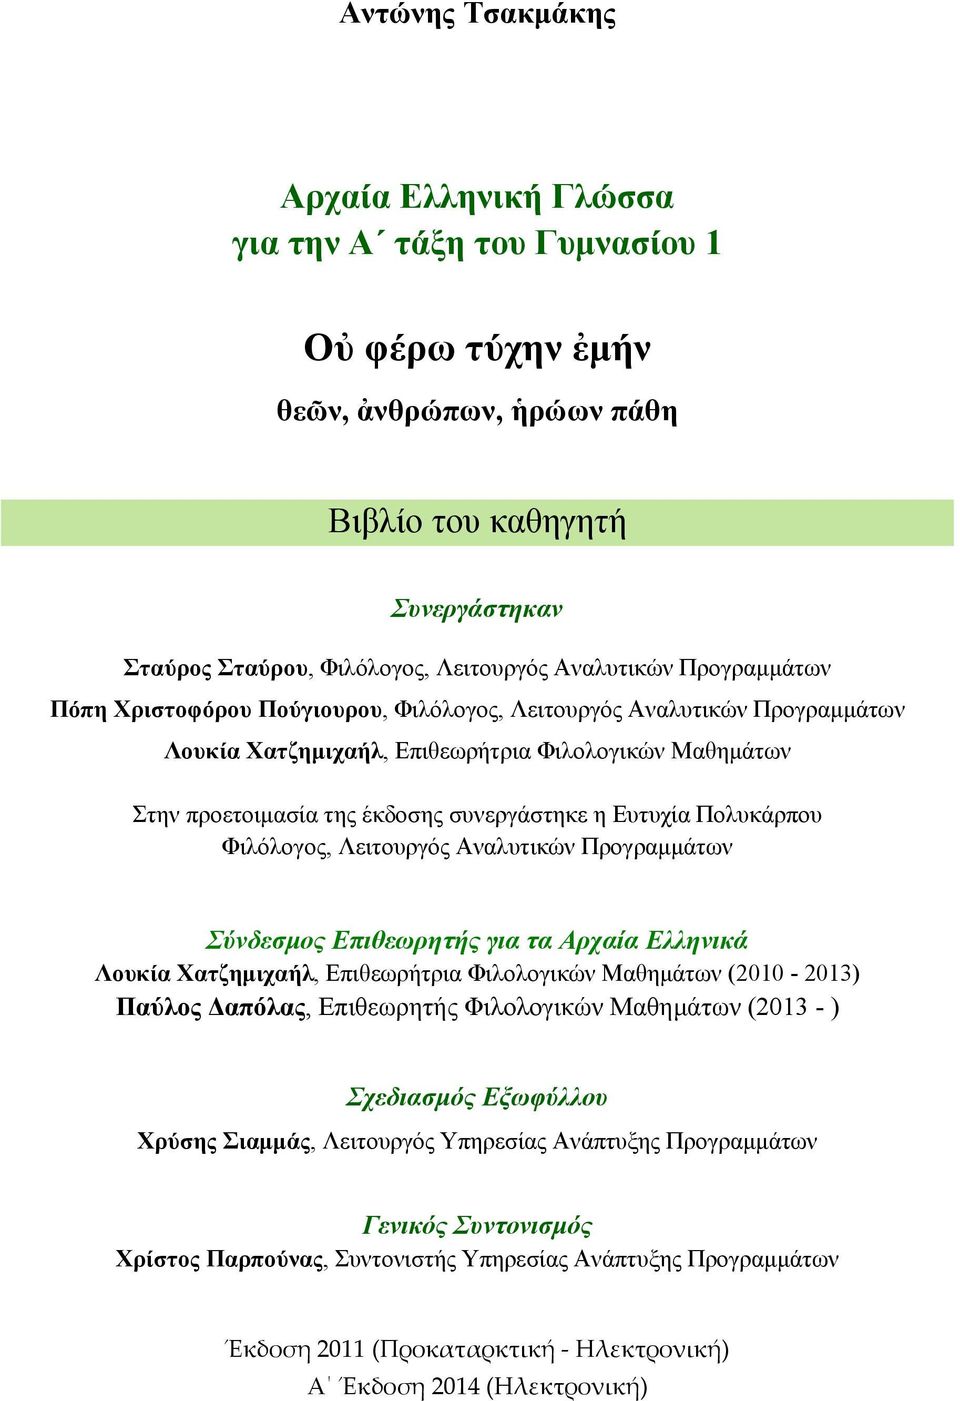 Ευτυχία Πολυκάρπου Φιλόλογος, Λειτουργός Αναλυτικών Προγραμμάτων Σύνδεσμος Επιθεωρητής για τα Αρχαία Ελληνικά Λουκία Χατζημιχαήλ, Επιθεωρήτρια Φιλολογικών Μαθημάτων (2010-2013) Παύλος Δαπόλας,